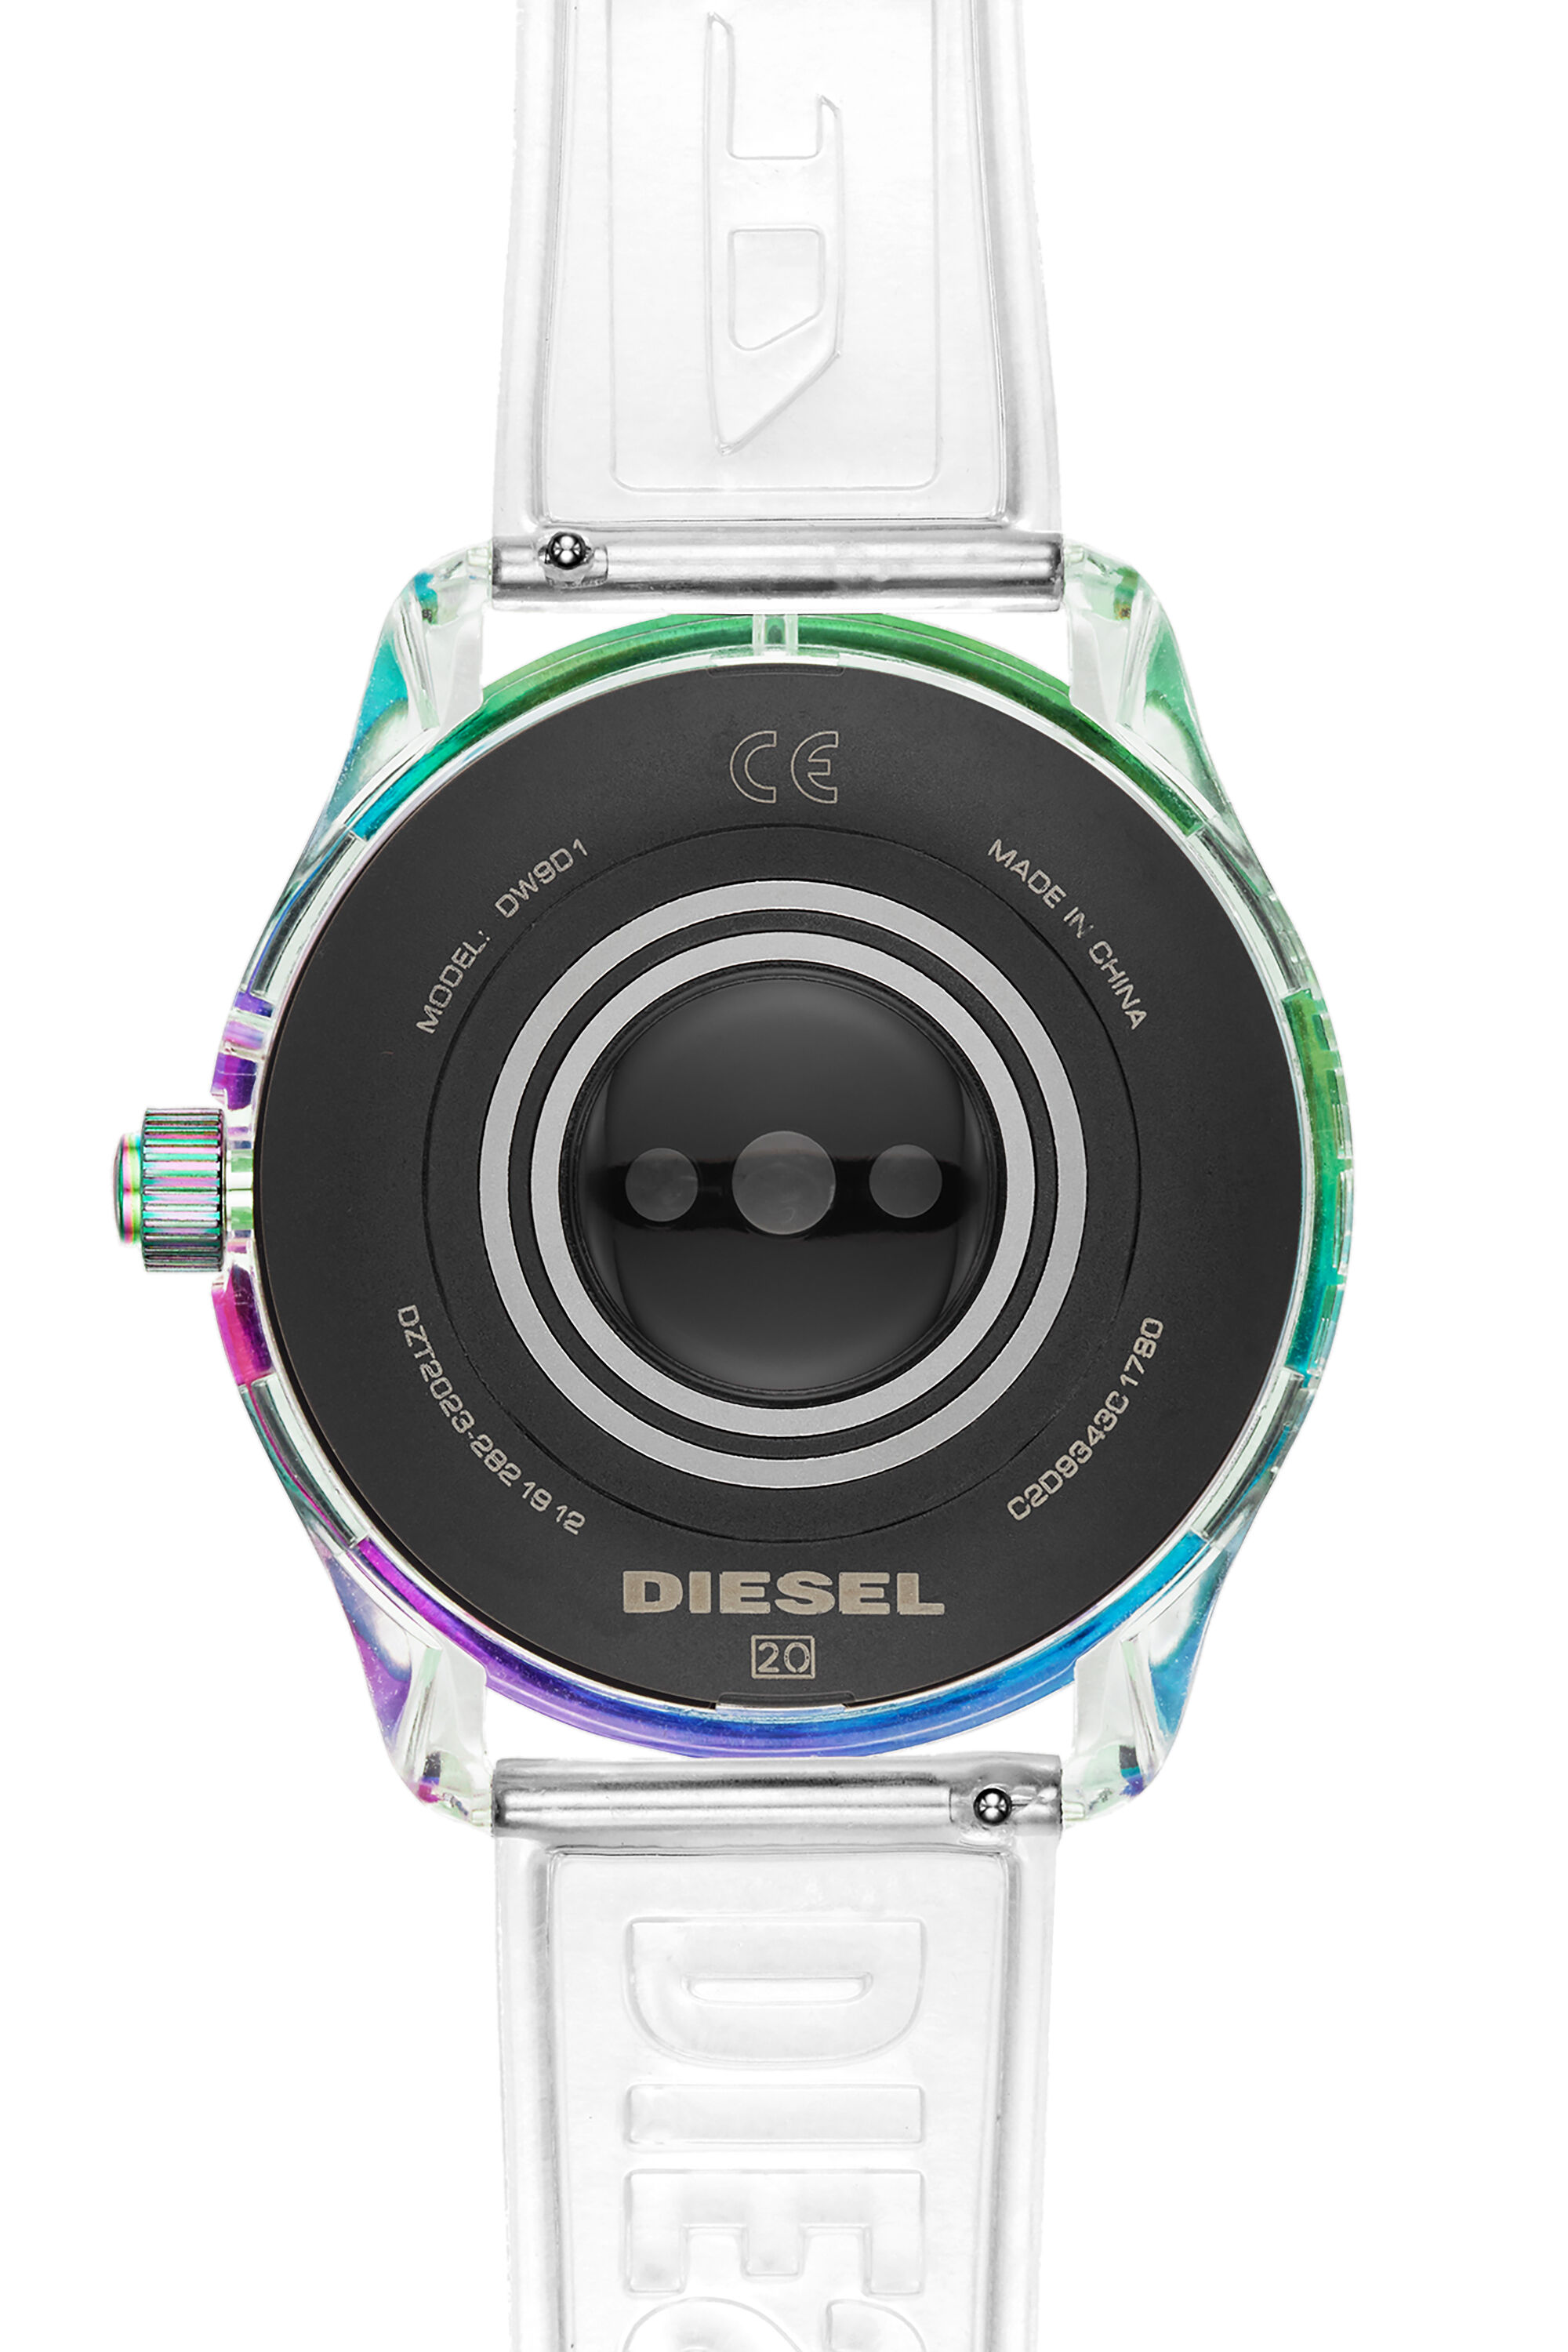 Diesel - DT2023, Bianco - Image 3